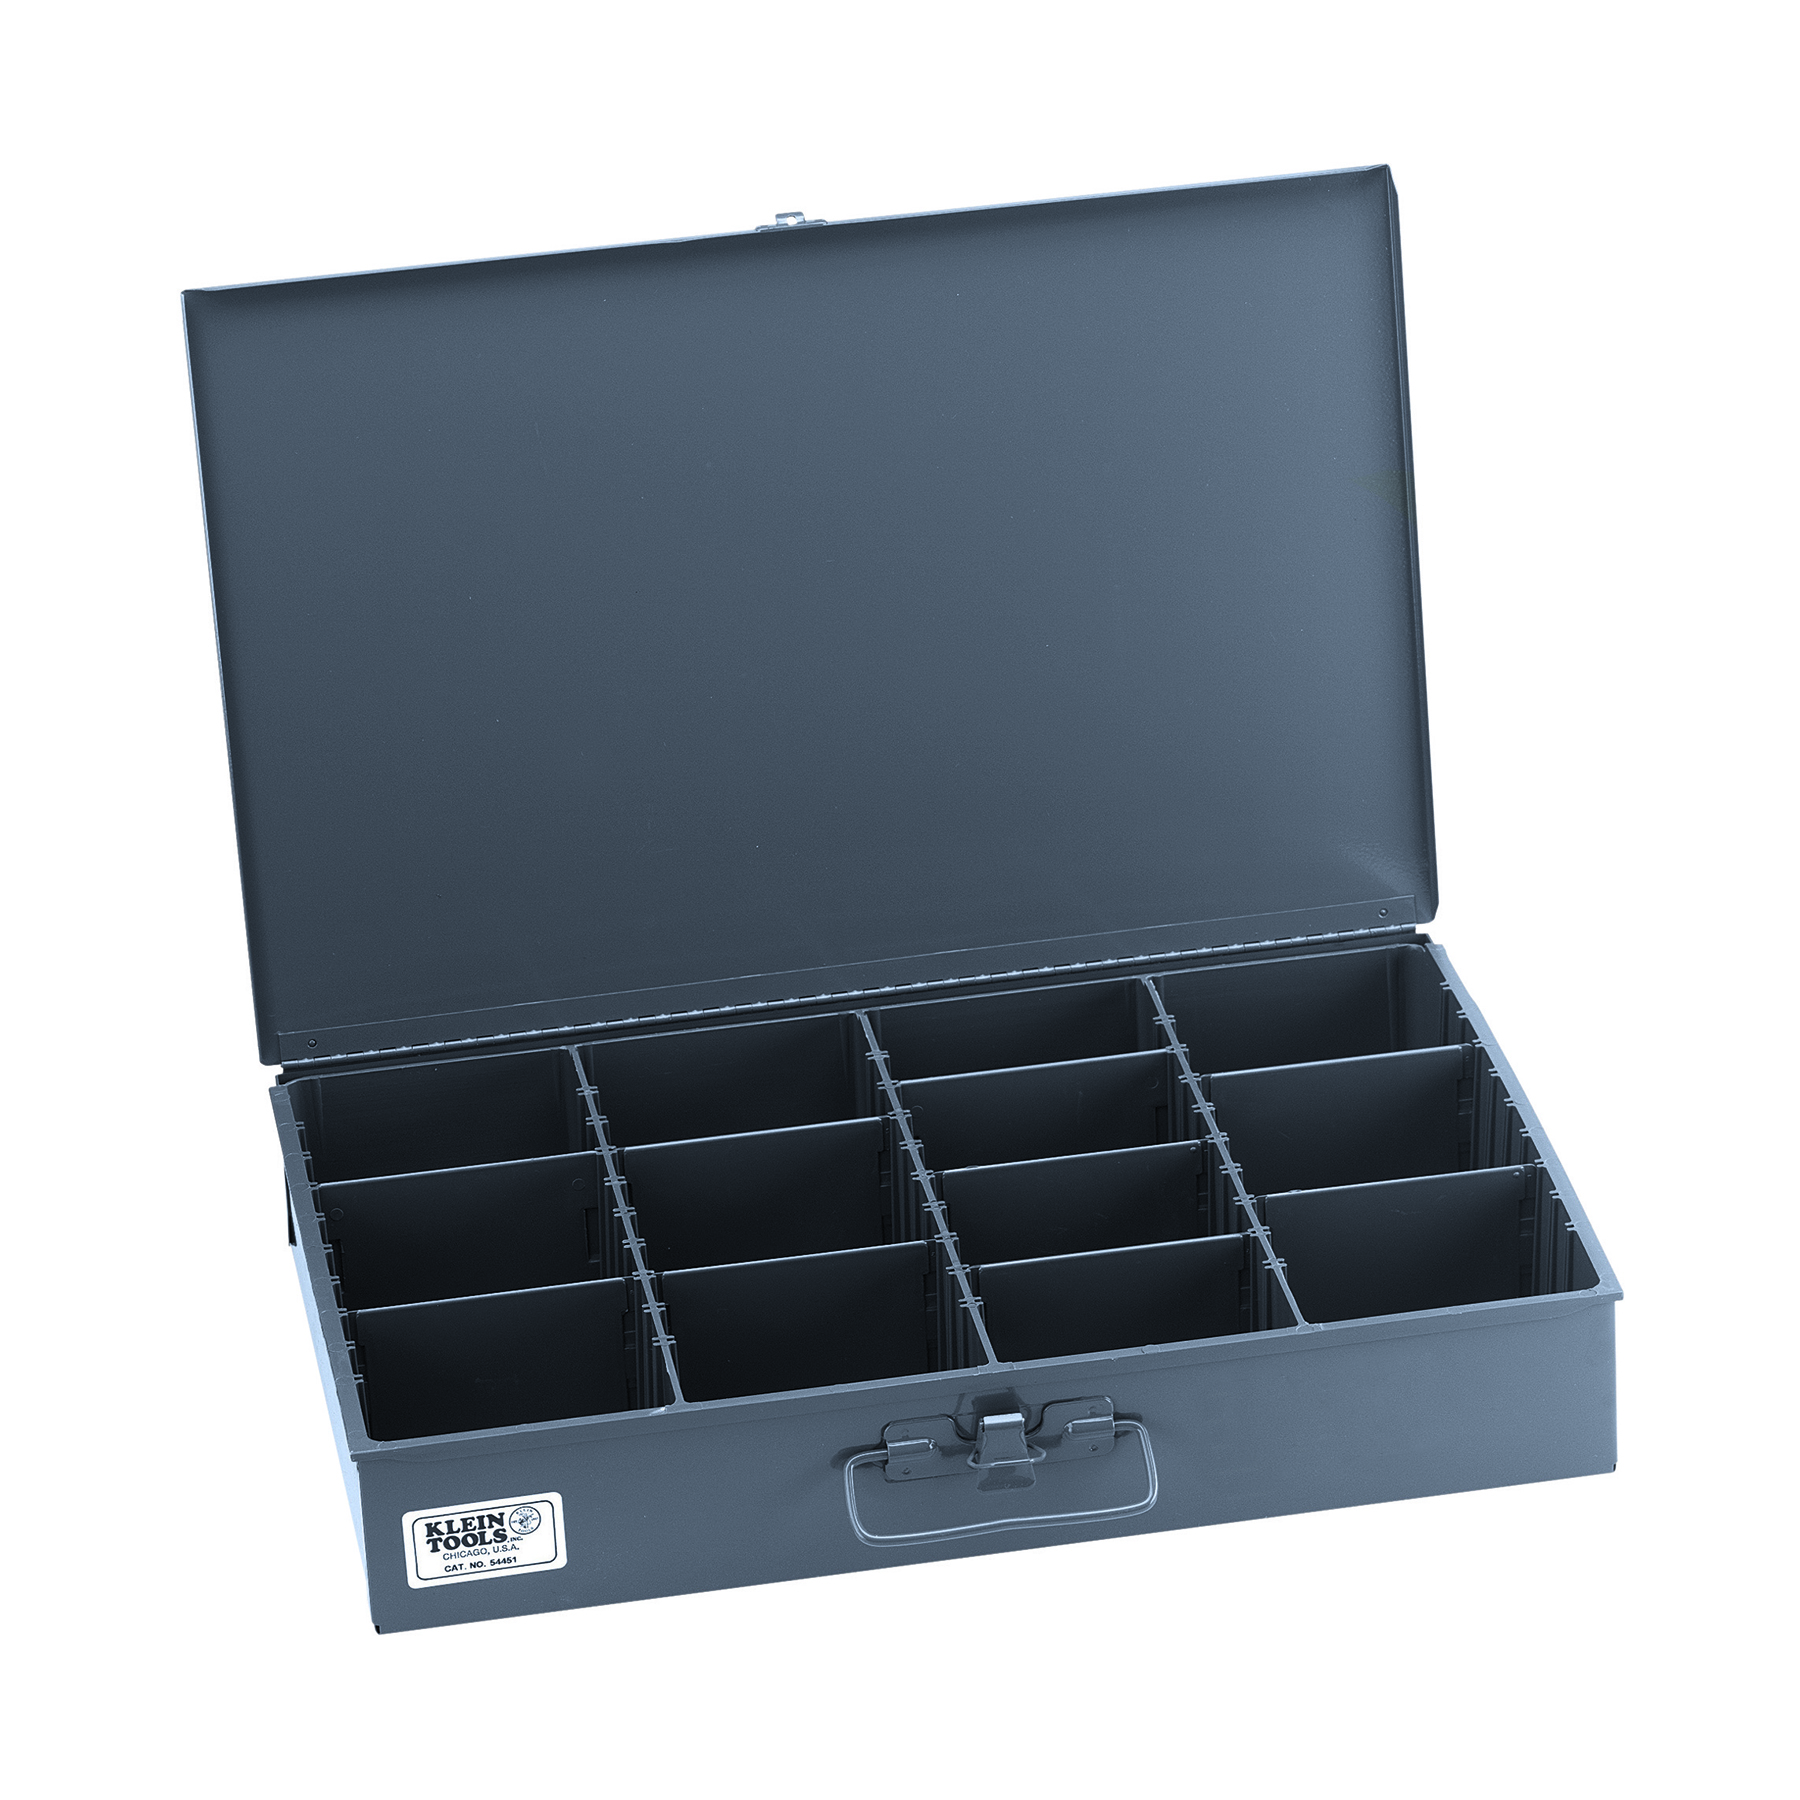 Caja de almacenamiento de piezas extragrande con compartimento